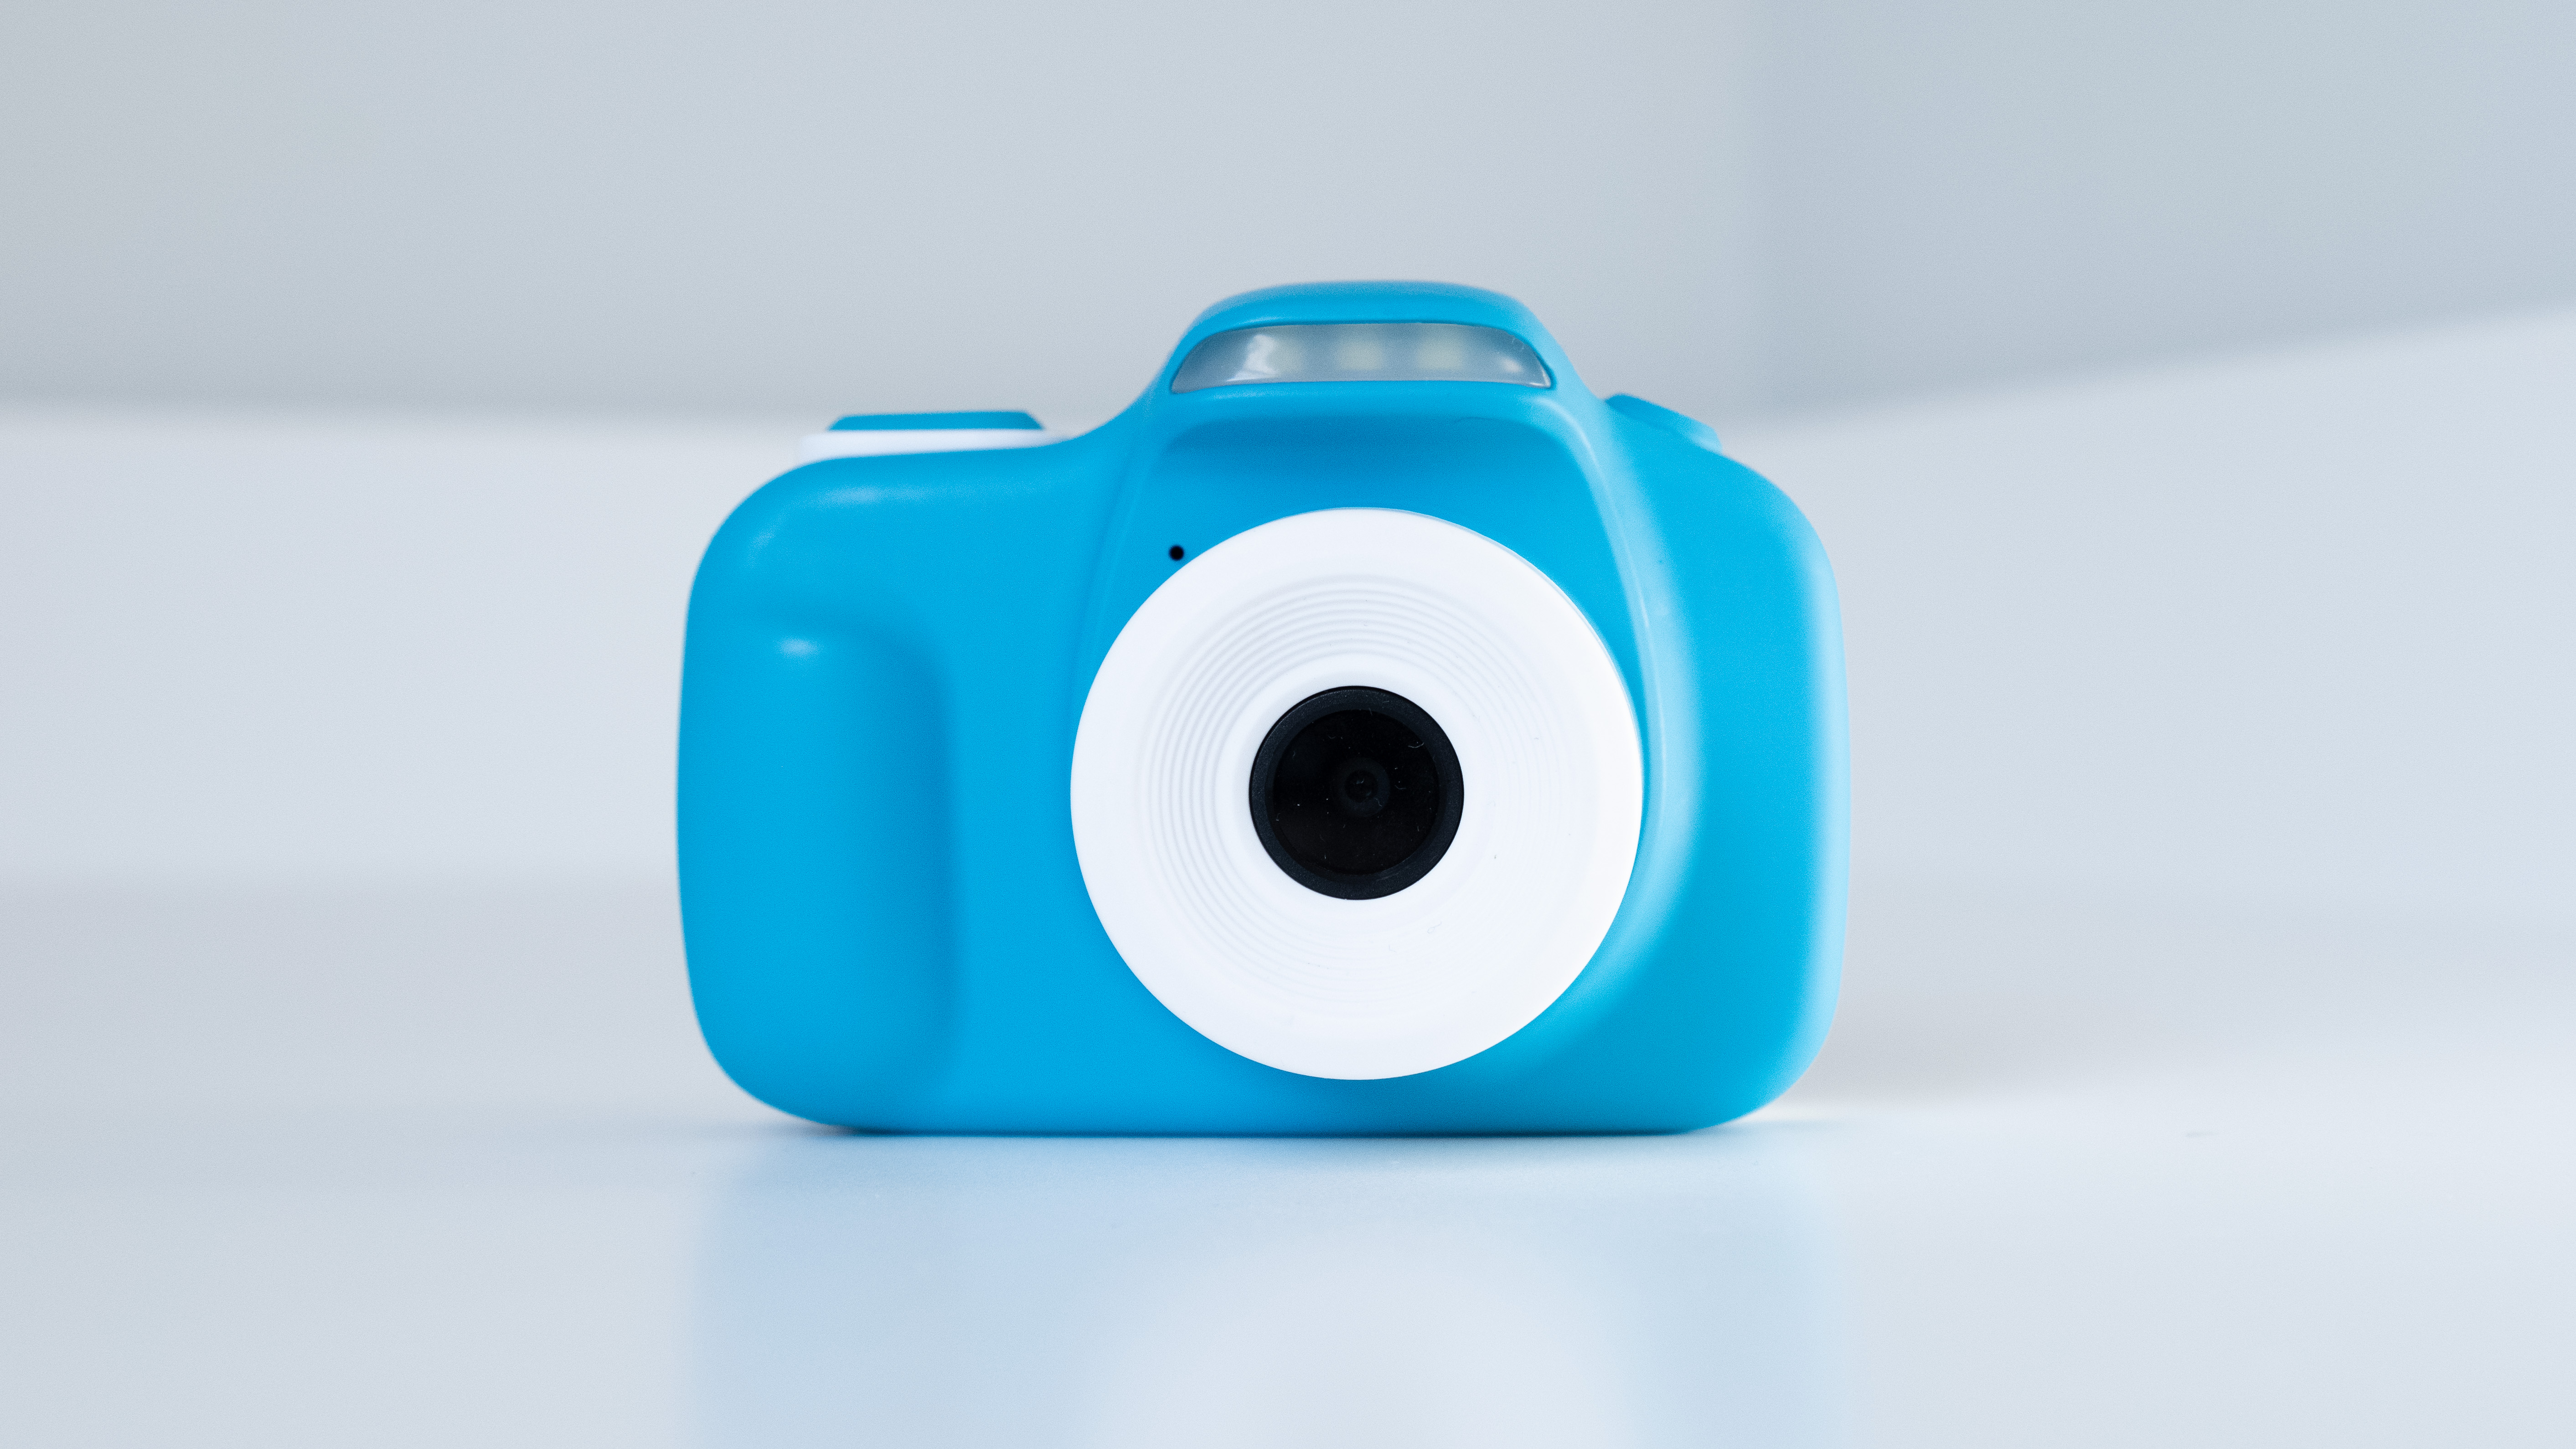 كاميرا myFirst 3 بدون الحقيبة باللون الأزرق على خلفية بيضاء